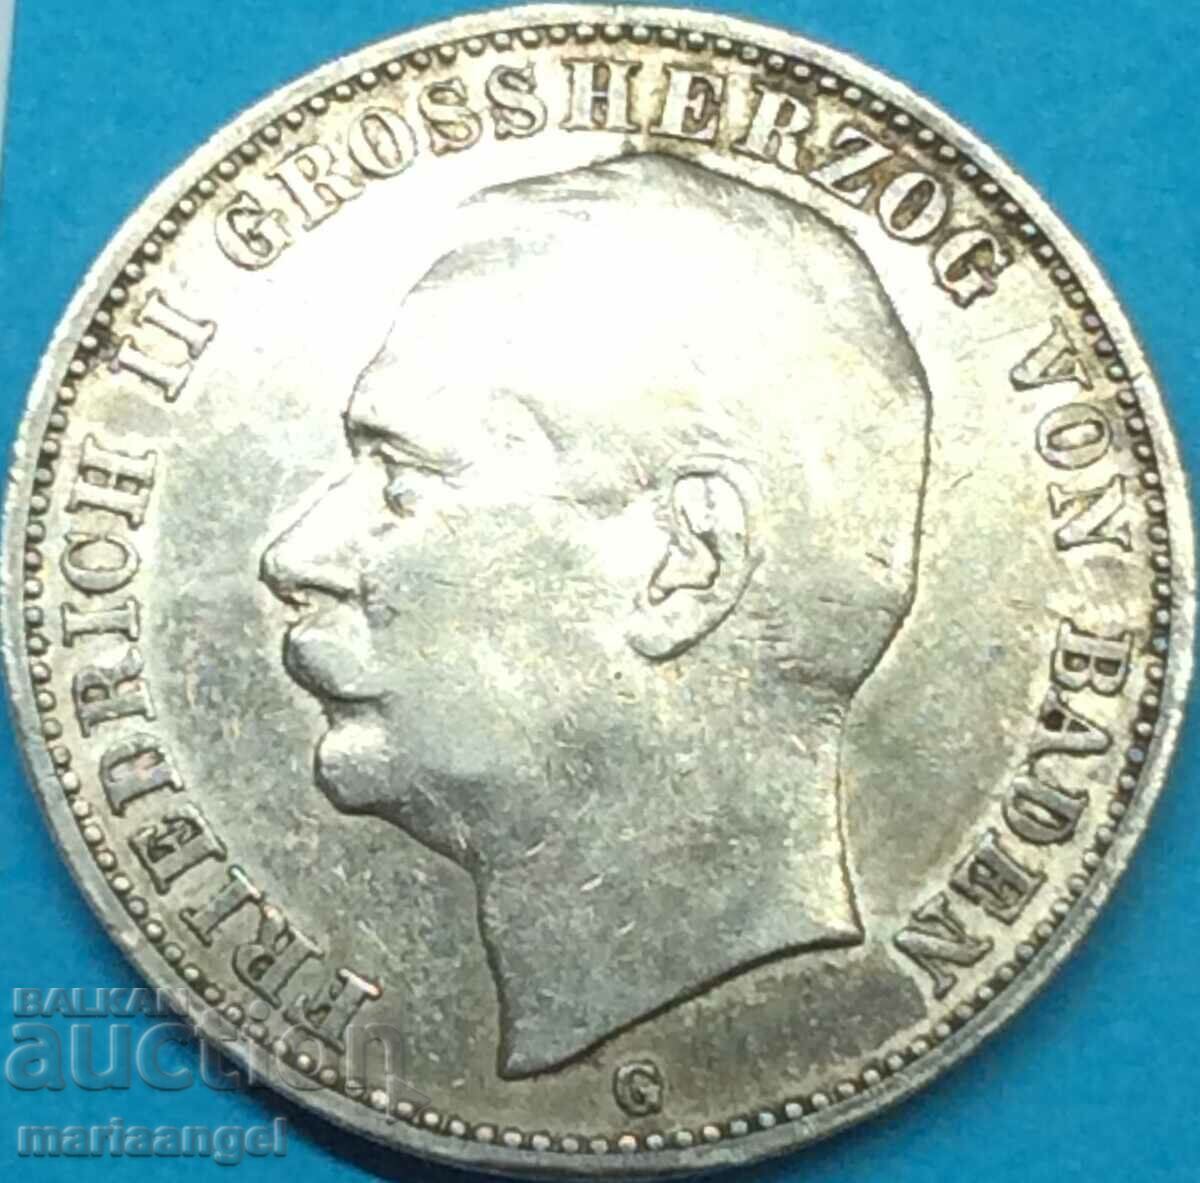 3 марки 1909 Баден Германия сребро